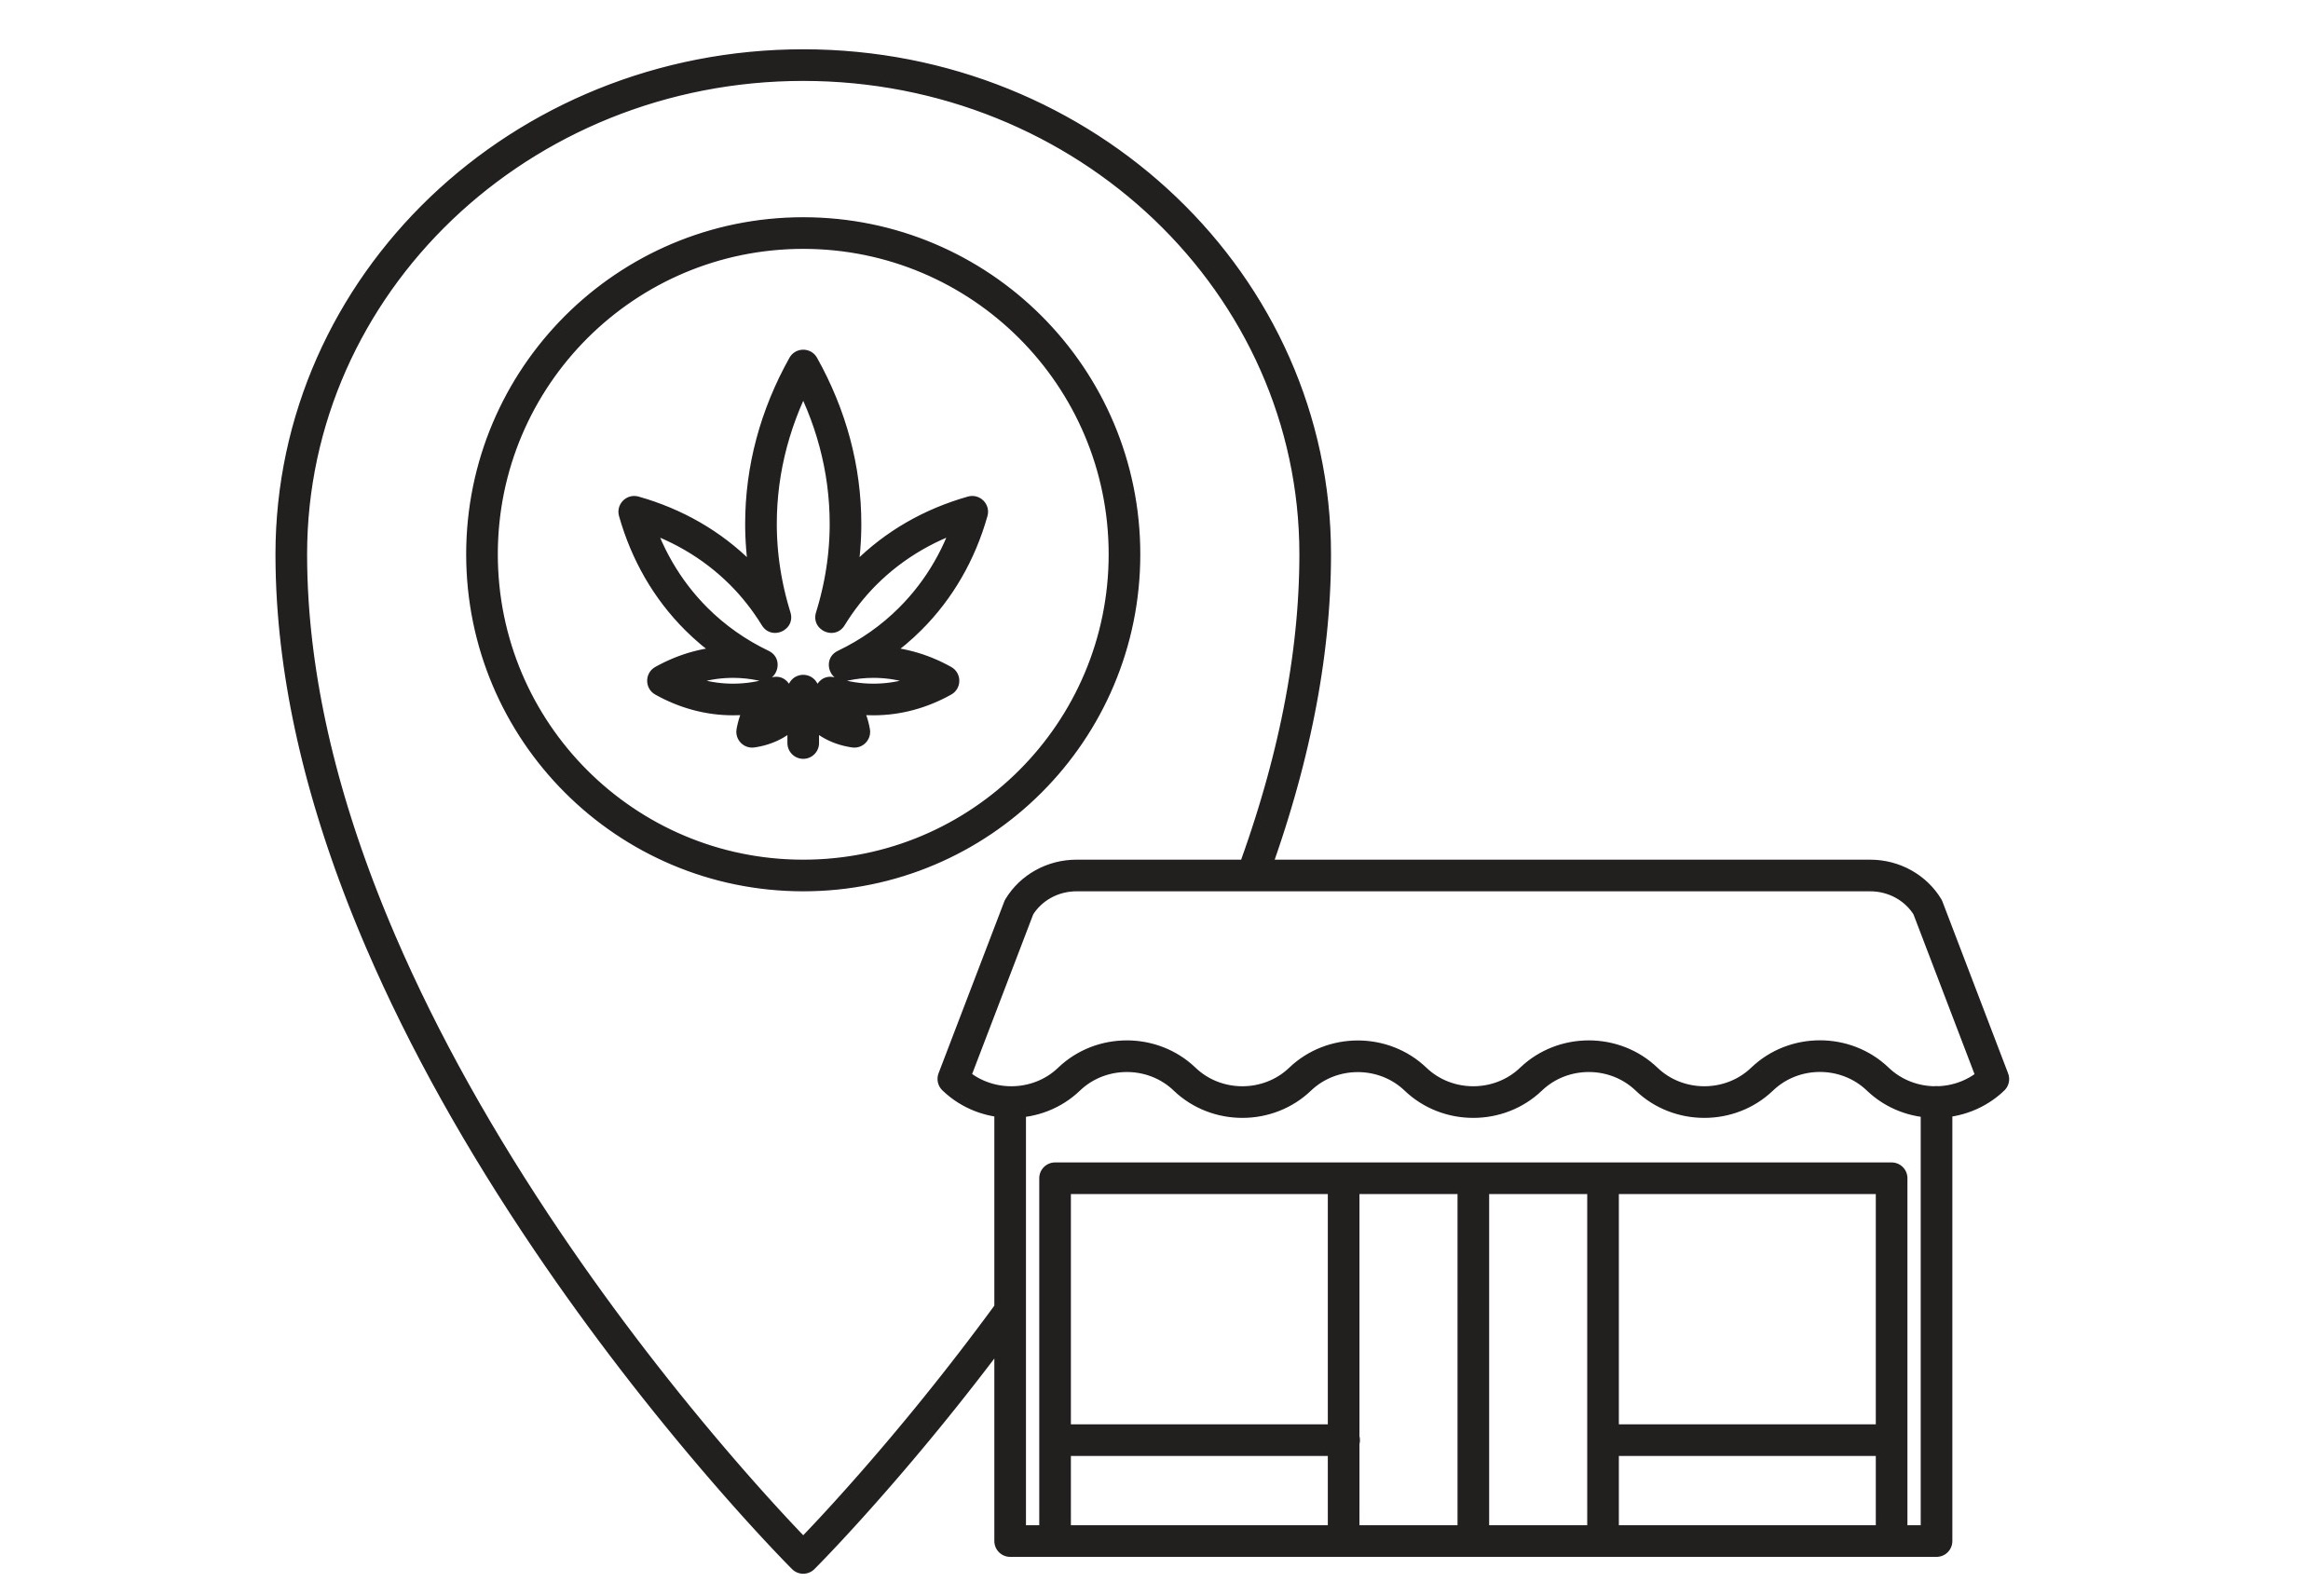 NJ cannabis